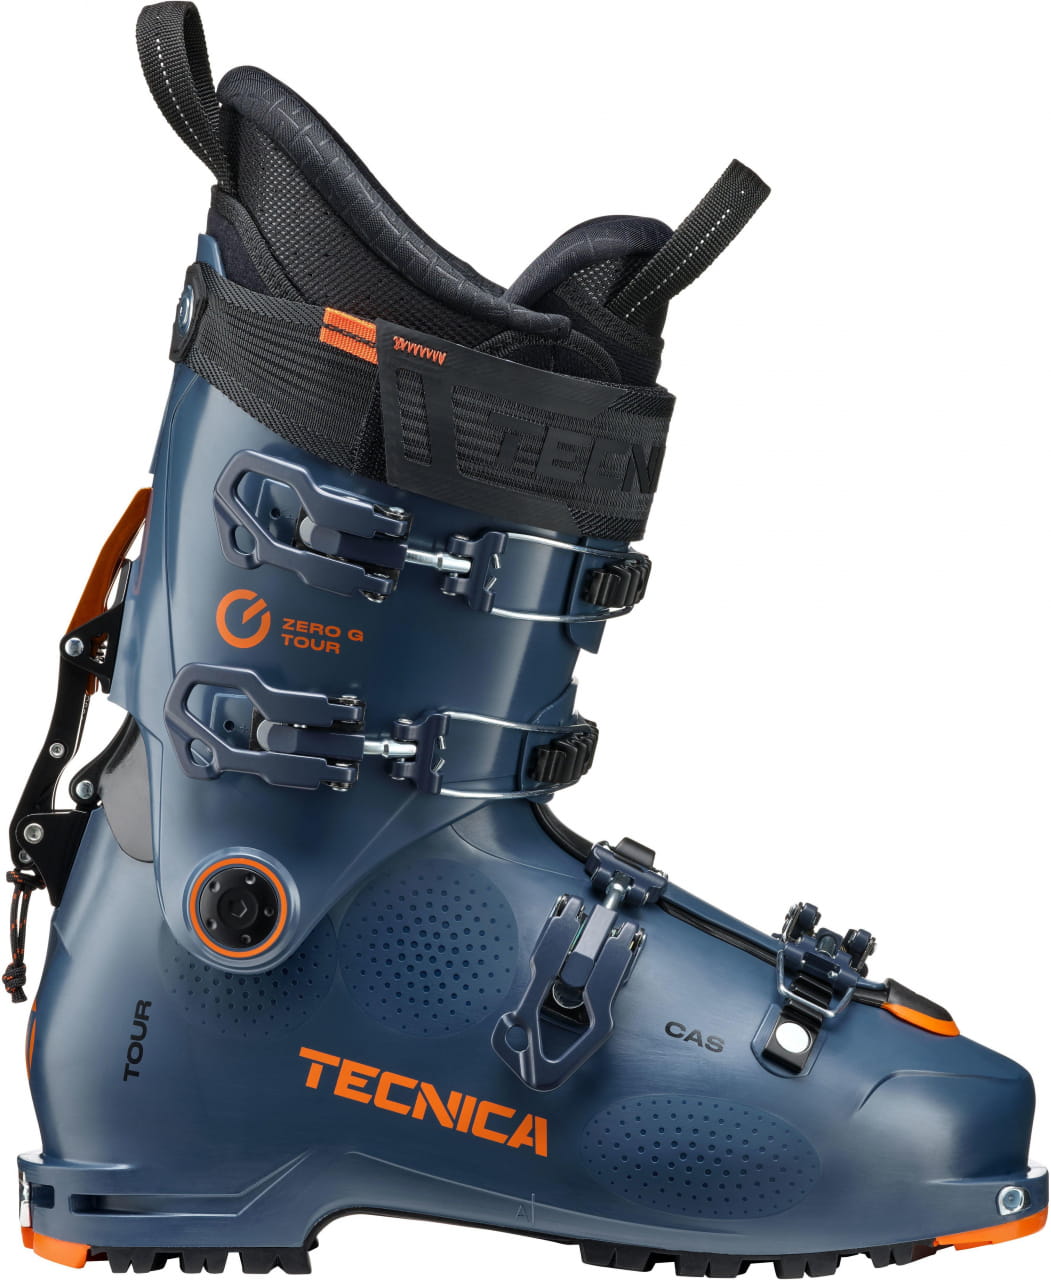 Buty narciarskie do wspinaczki górskiej Tecnica Zero G Tour